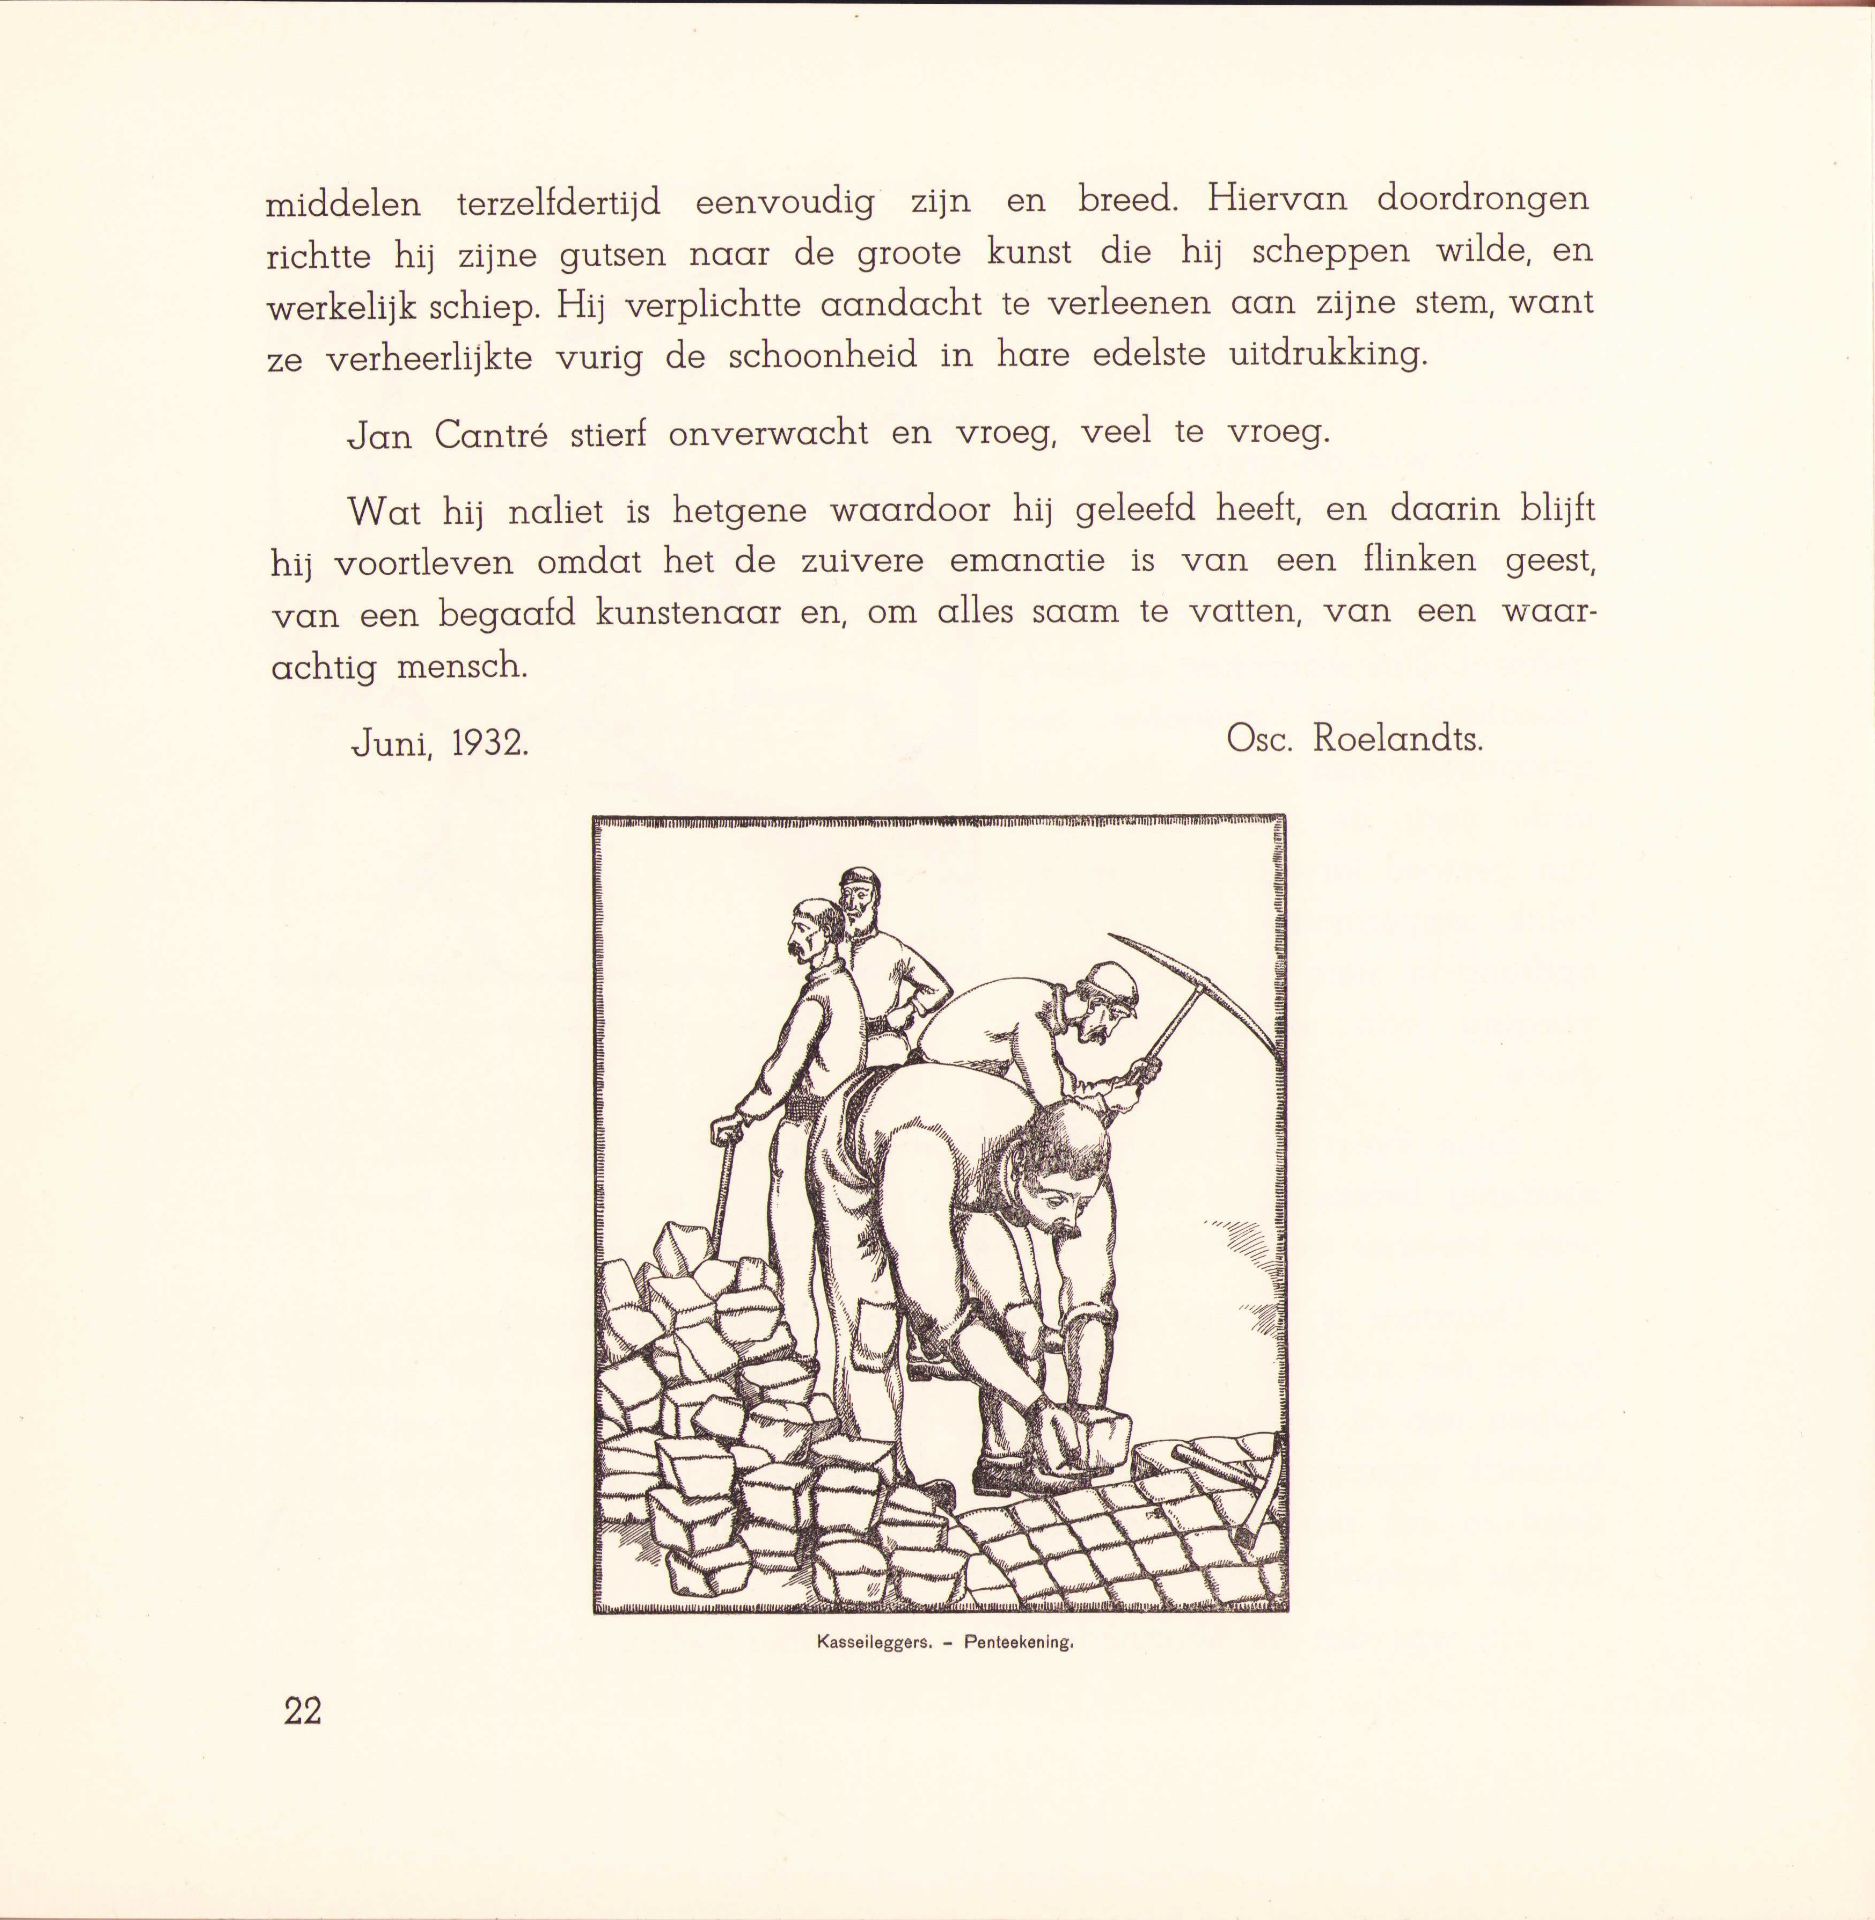 |Art| "Jan Frans Cantré Xylograaf", 193. Uitgave van de Koninklijke Academie van Schoone Kunsten, - Image 4 of 9